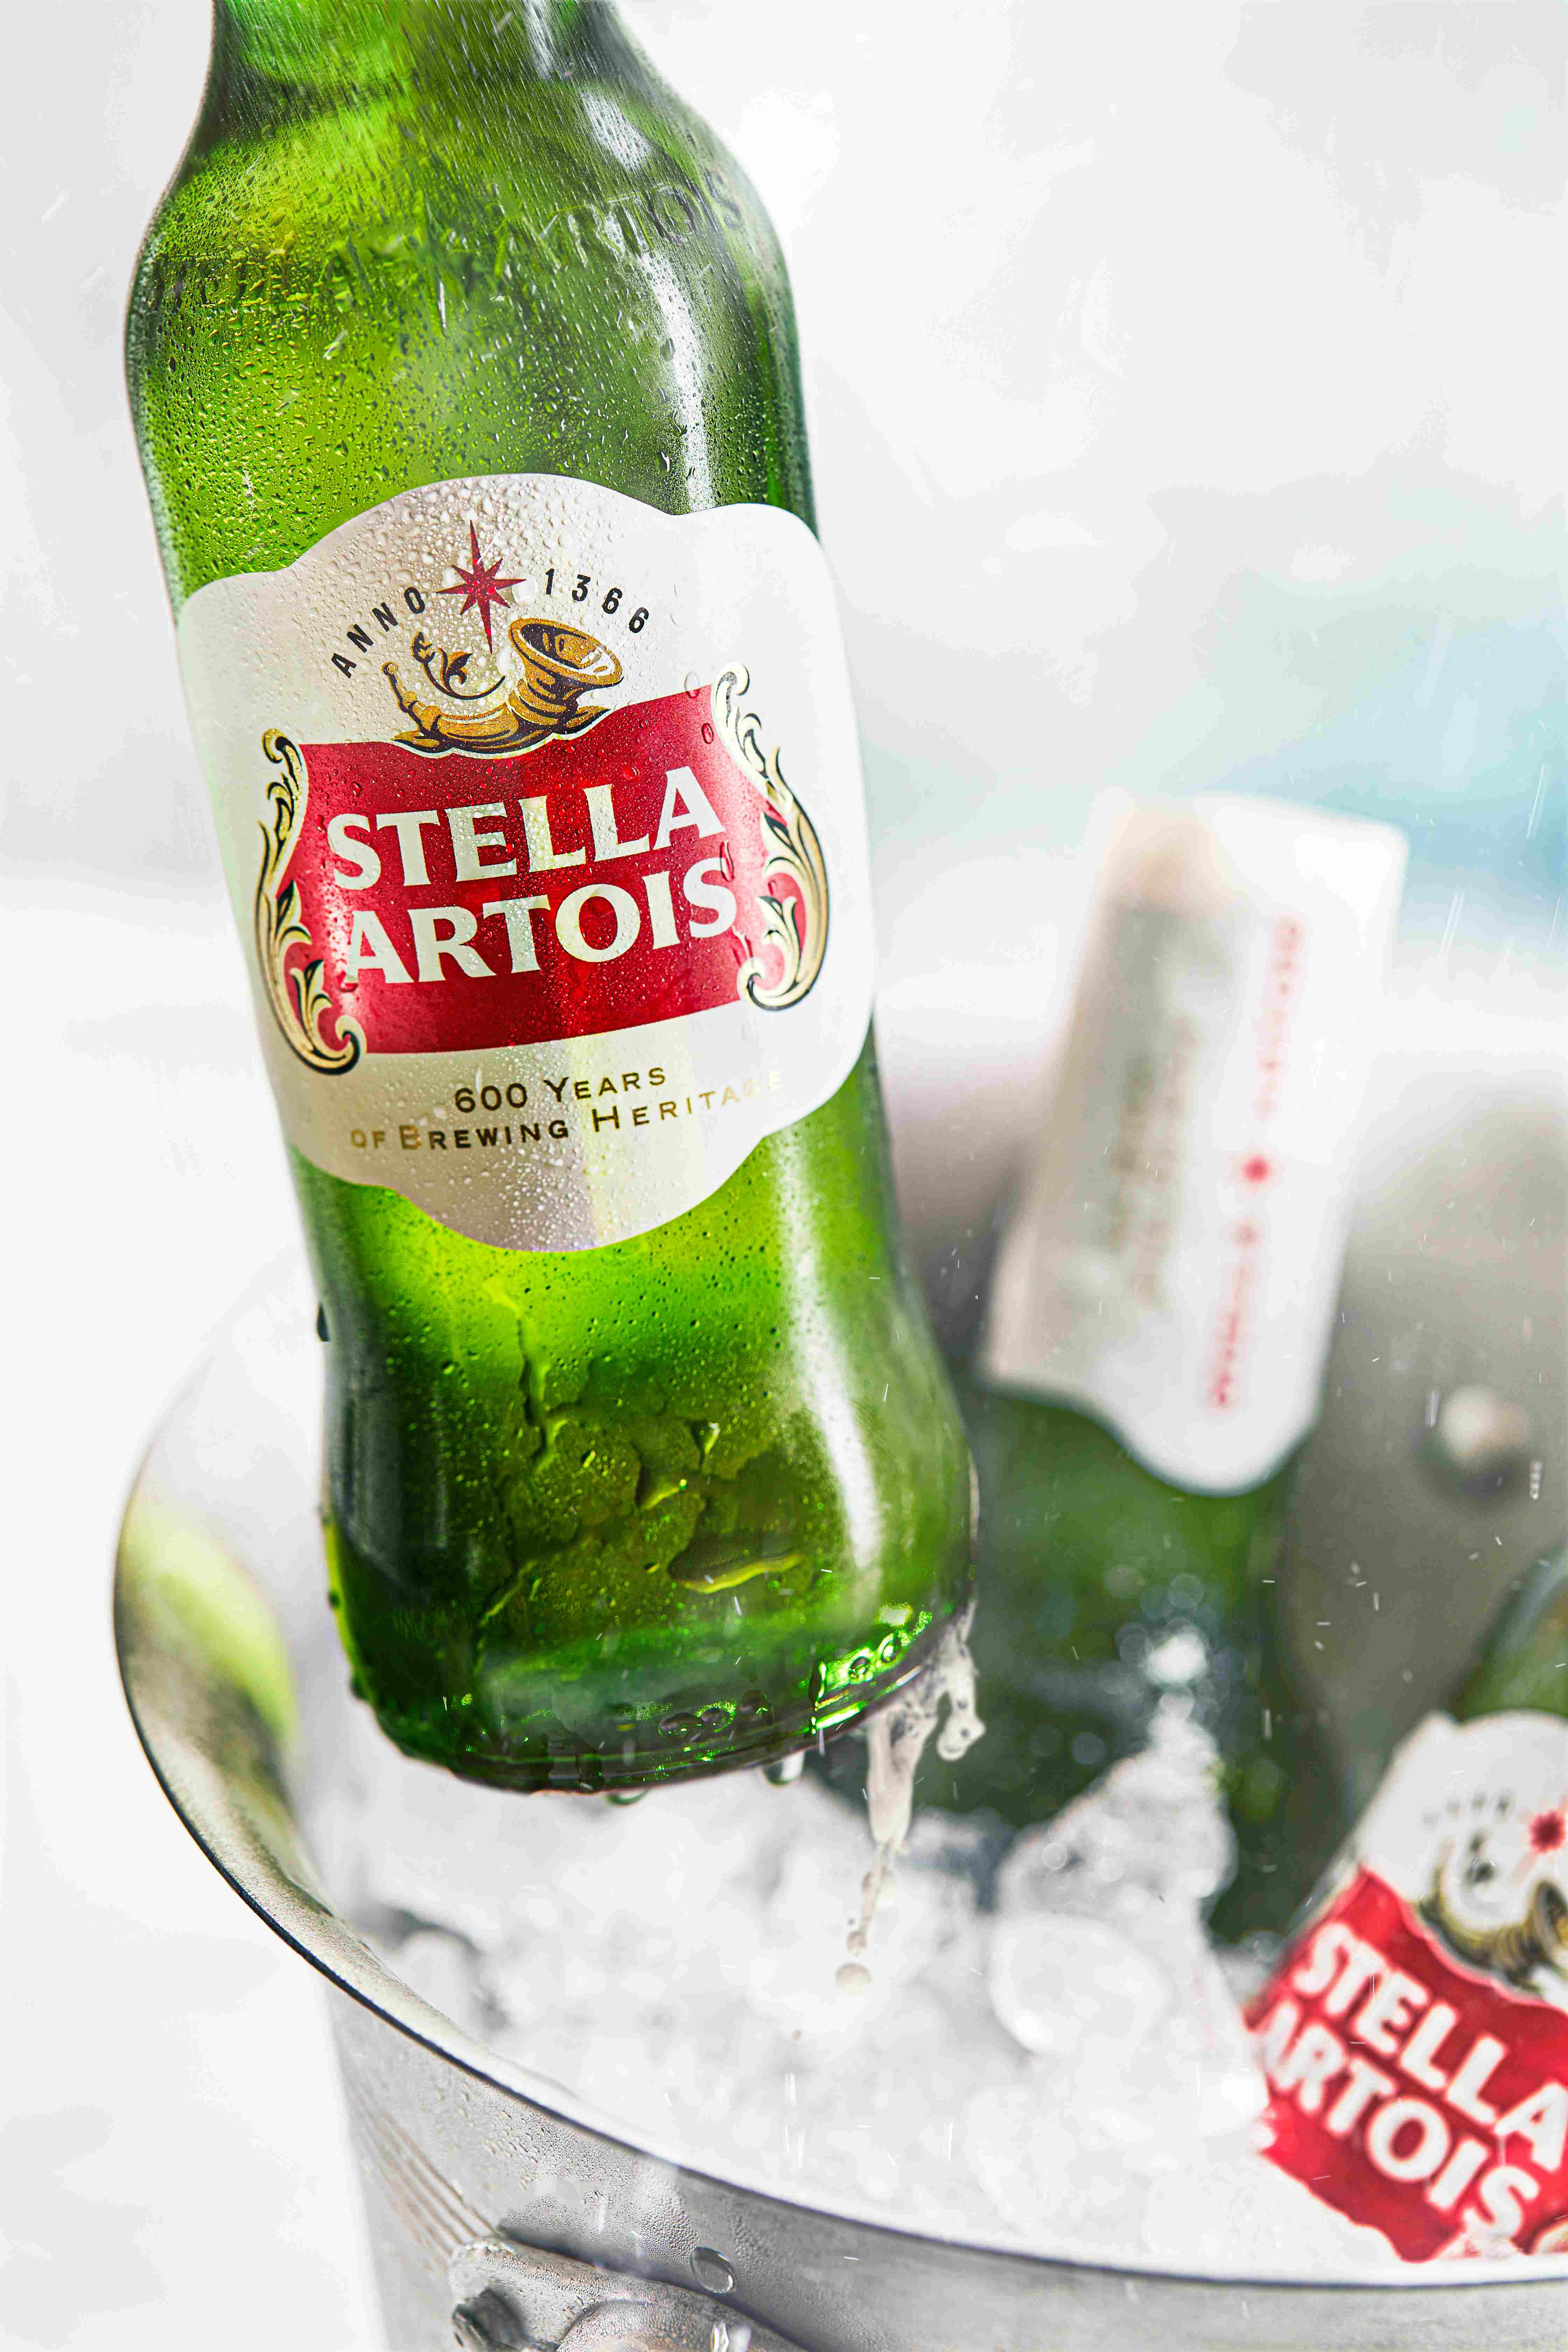 Stella Artois bottles in ice bucket